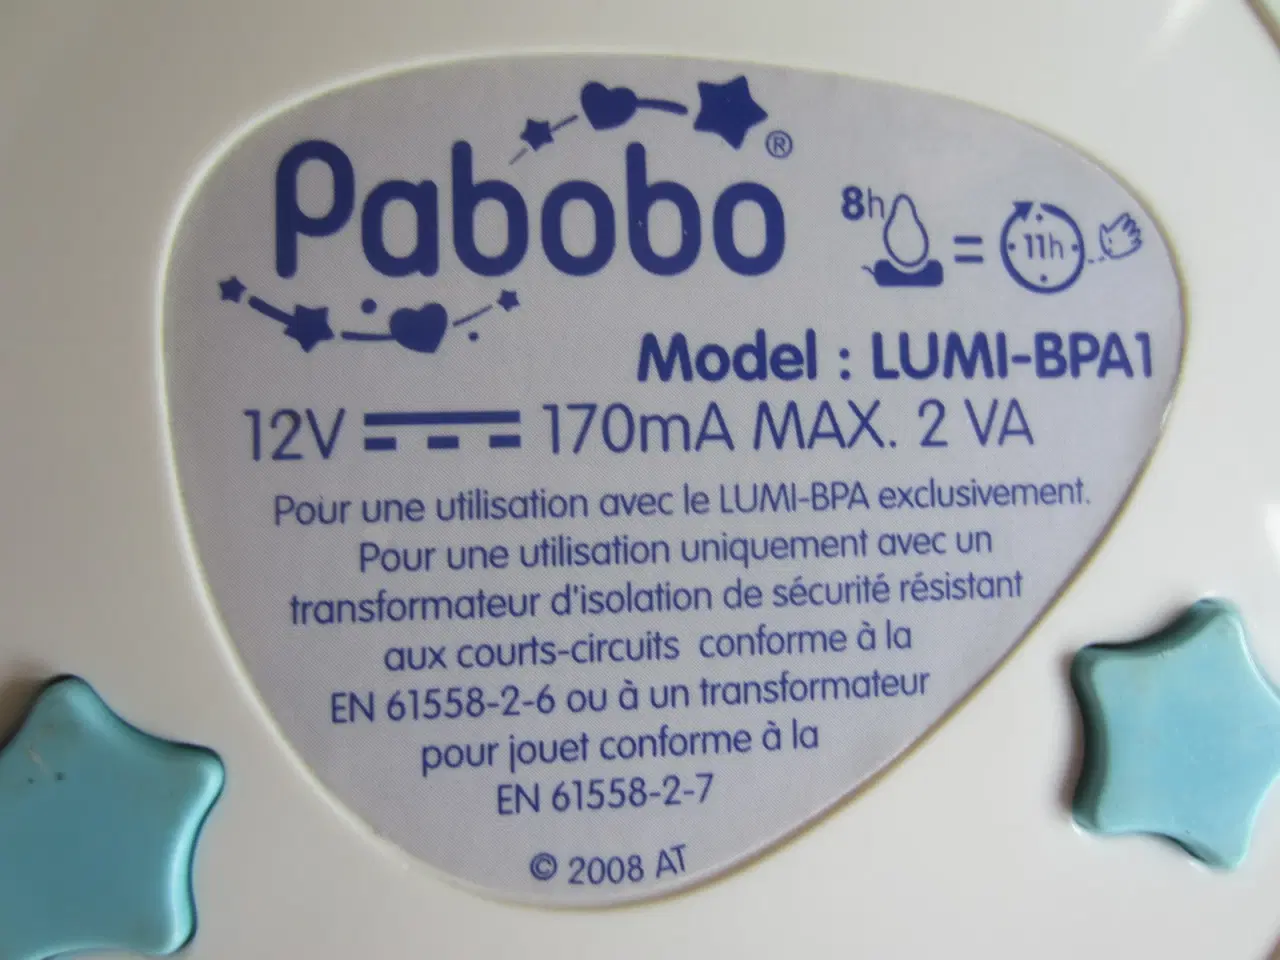 Billede 2 - Pabobo Model: LUMI-BPA1 oplade-station